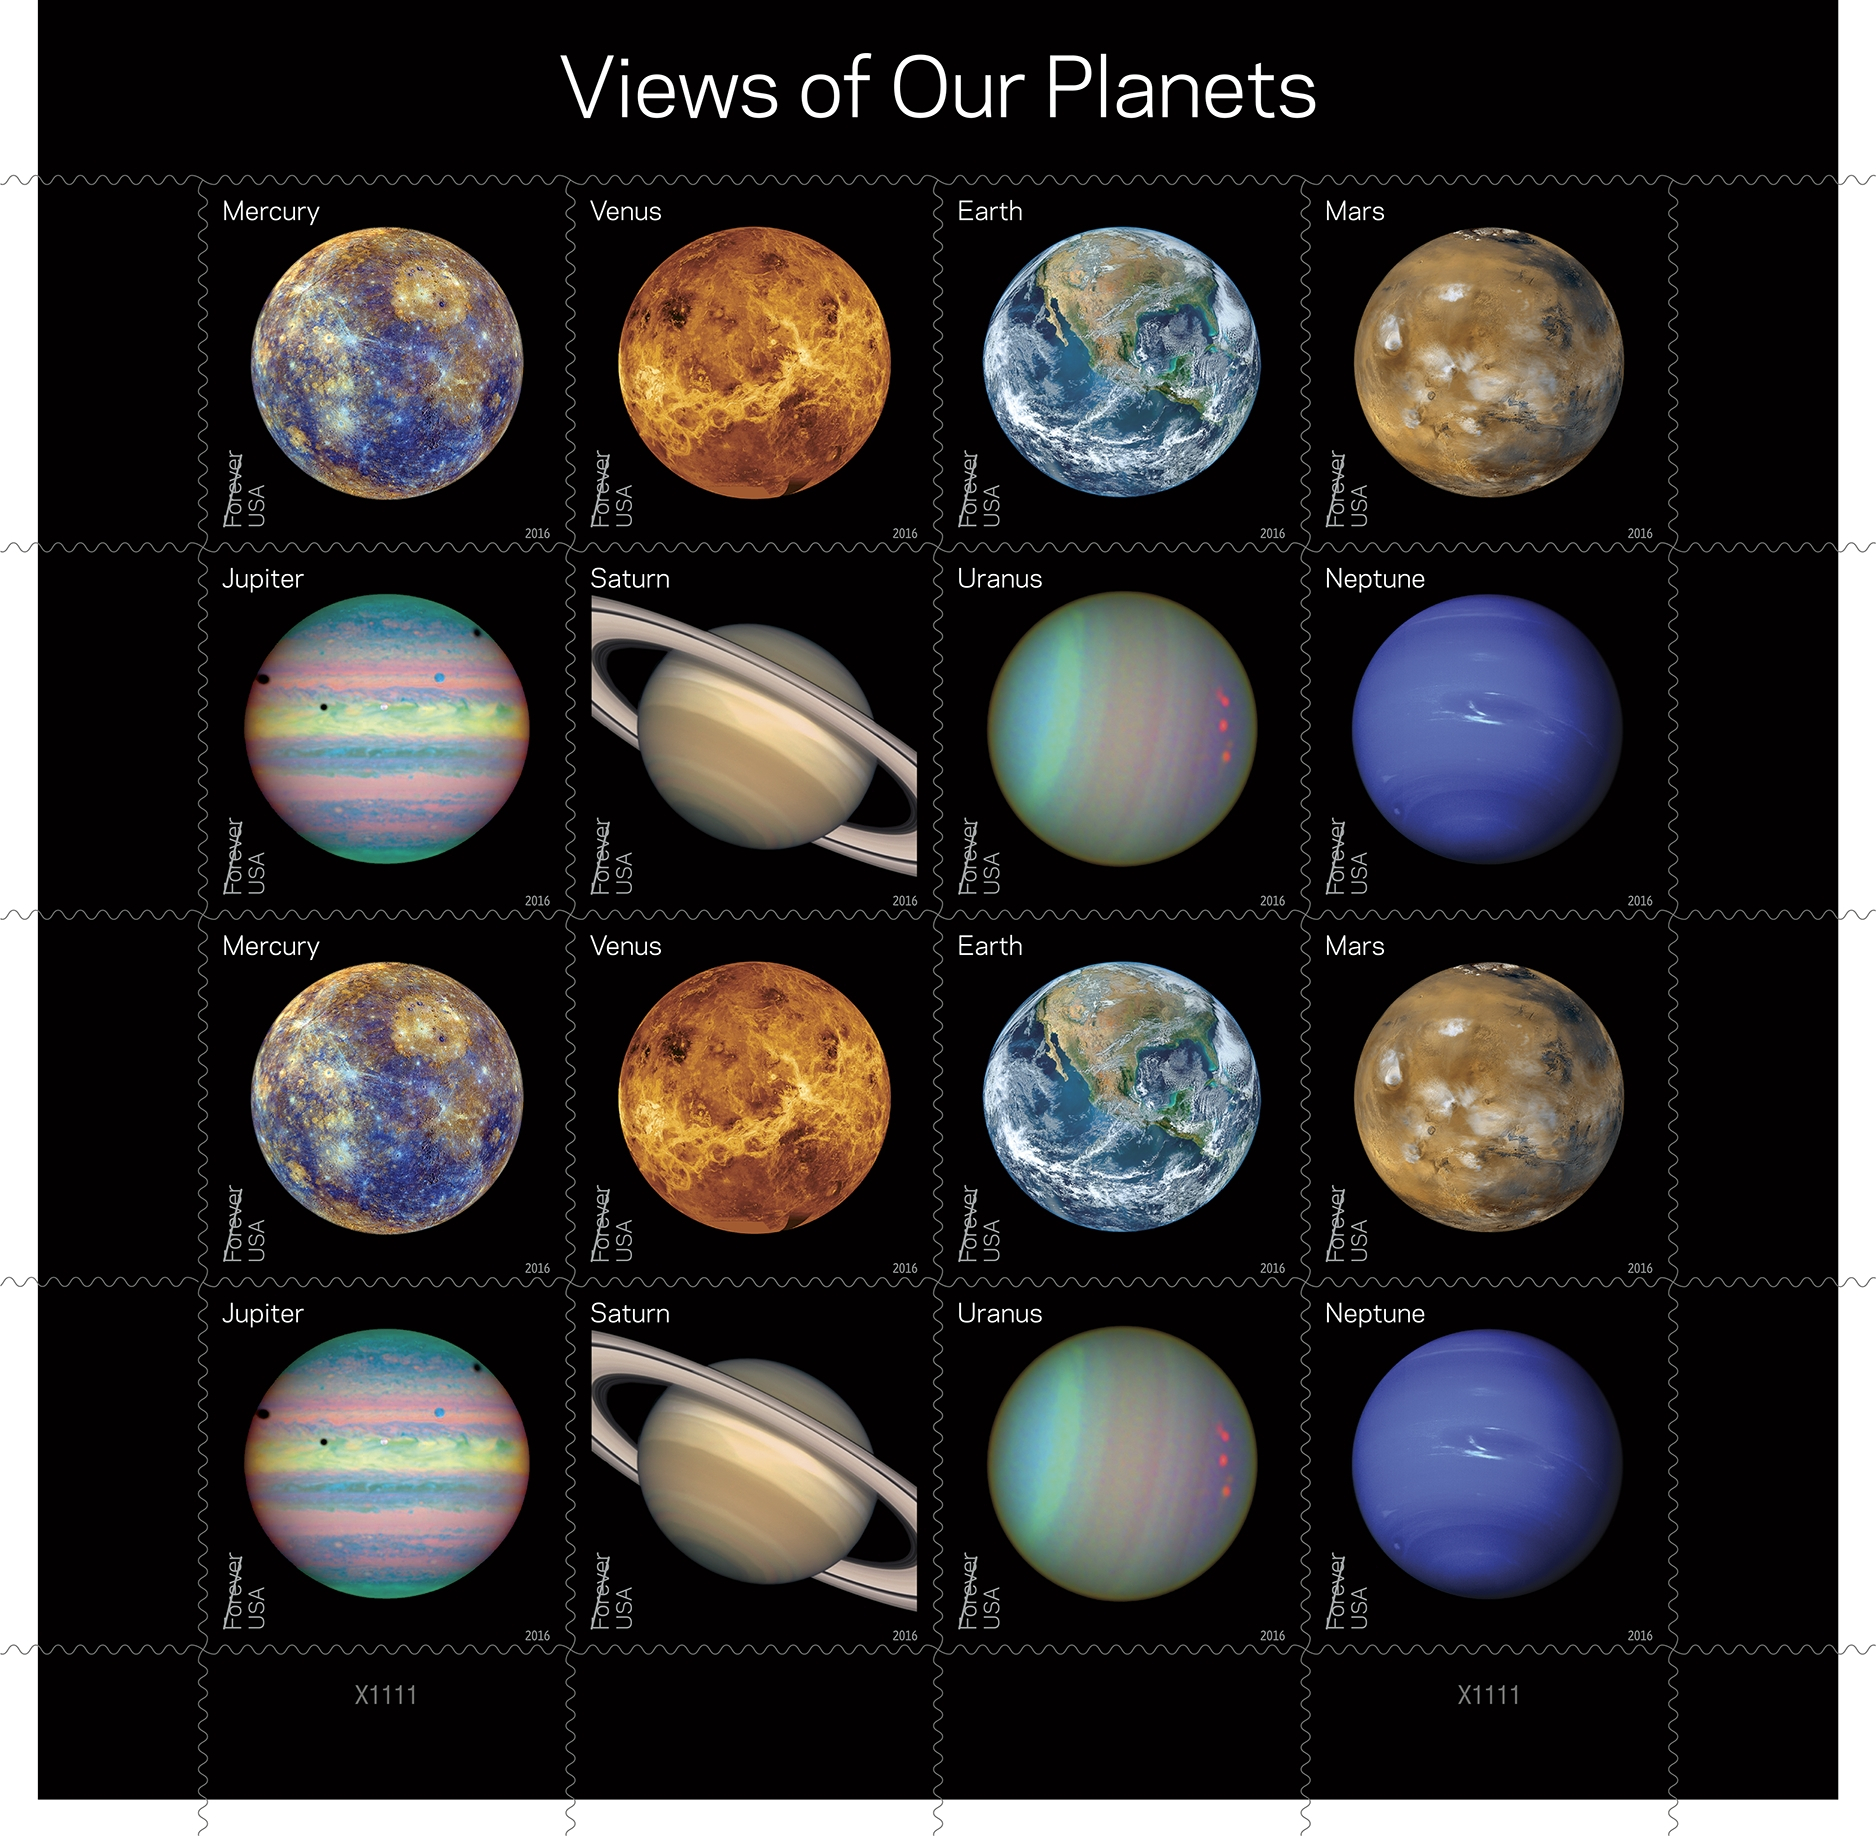 太阳系八大行星(美国发行邮票)